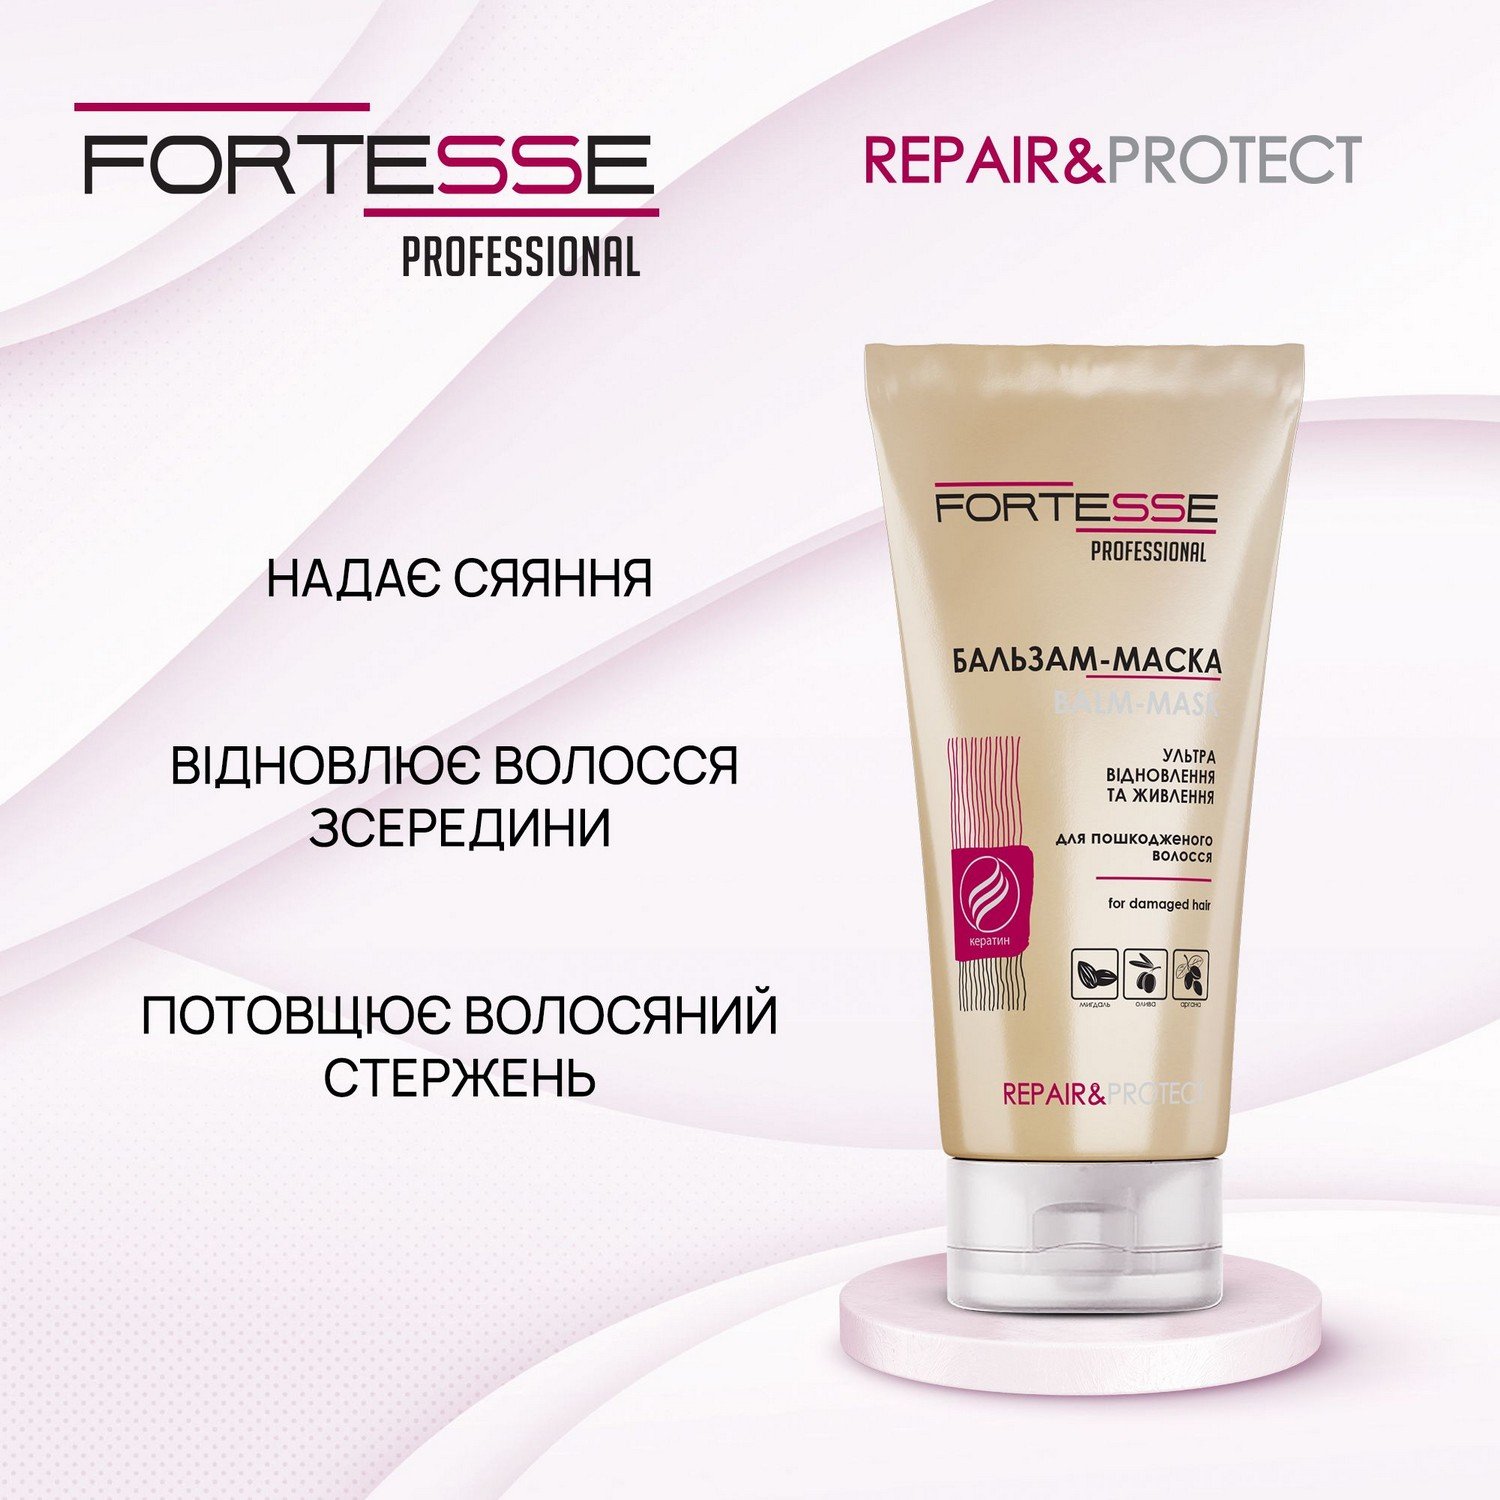 Восстанавливающая бальзам-маска Fortesse Professional Repair&Protect для сухих, поврежденных волос, нуждающихся в питании, 200 мл - фото 4